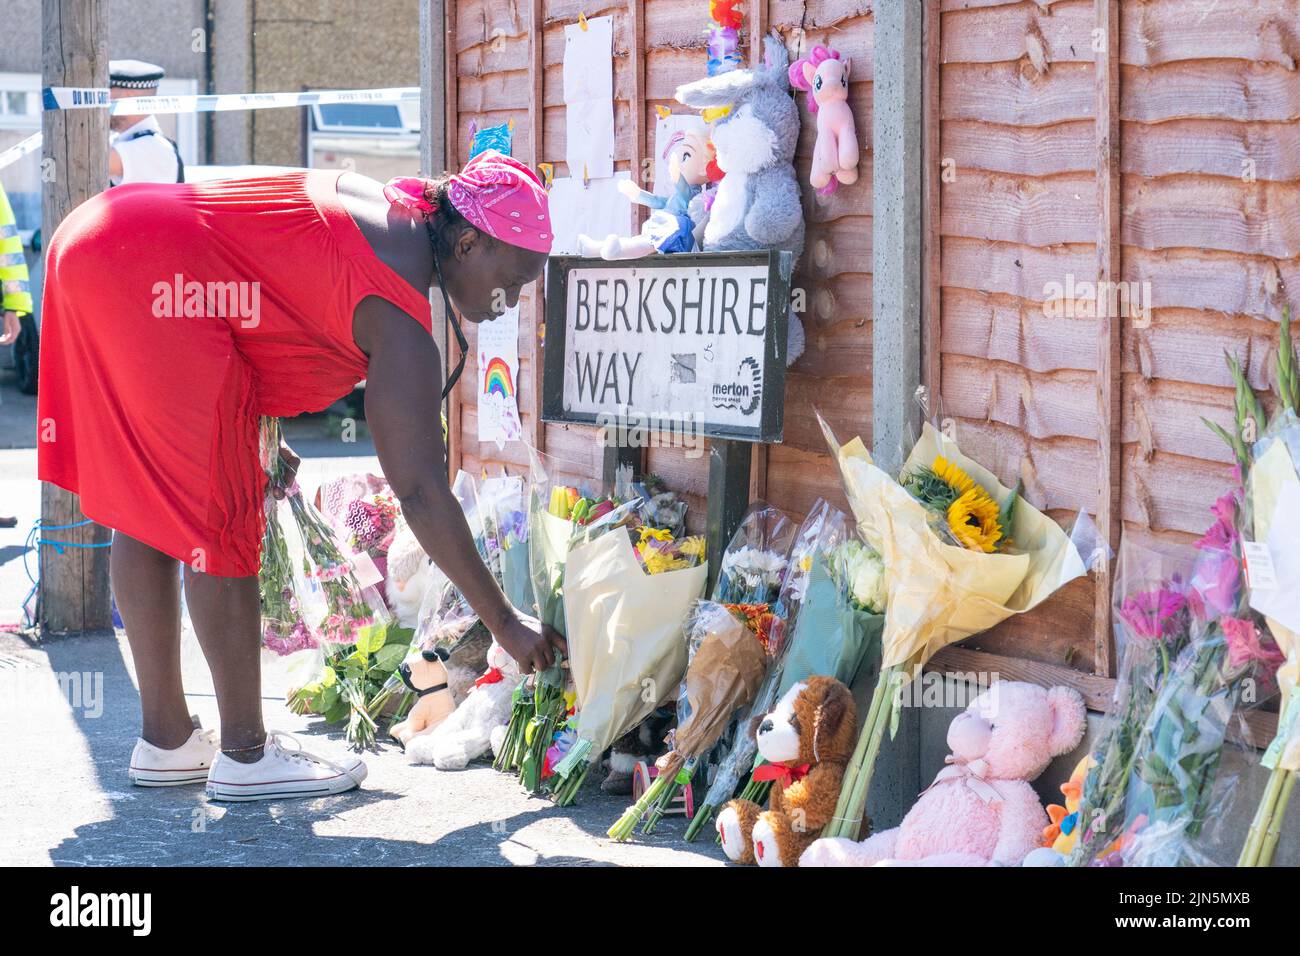 Eine Frau legt Blumen in der Nähe von Galpin's Road in Thornton Heath, im Süden Londons. Der Londoner Krankenwagen hat bestätigt, dass ein Kind gestorben ist und drei Personen im Krankenhaus sind, nachdem das Reihenhaus am Montag nach einer Explosion und einem Brand zusammengebrochen war. Bilddatum: Dienstag, 9. August 2022. Stockfoto